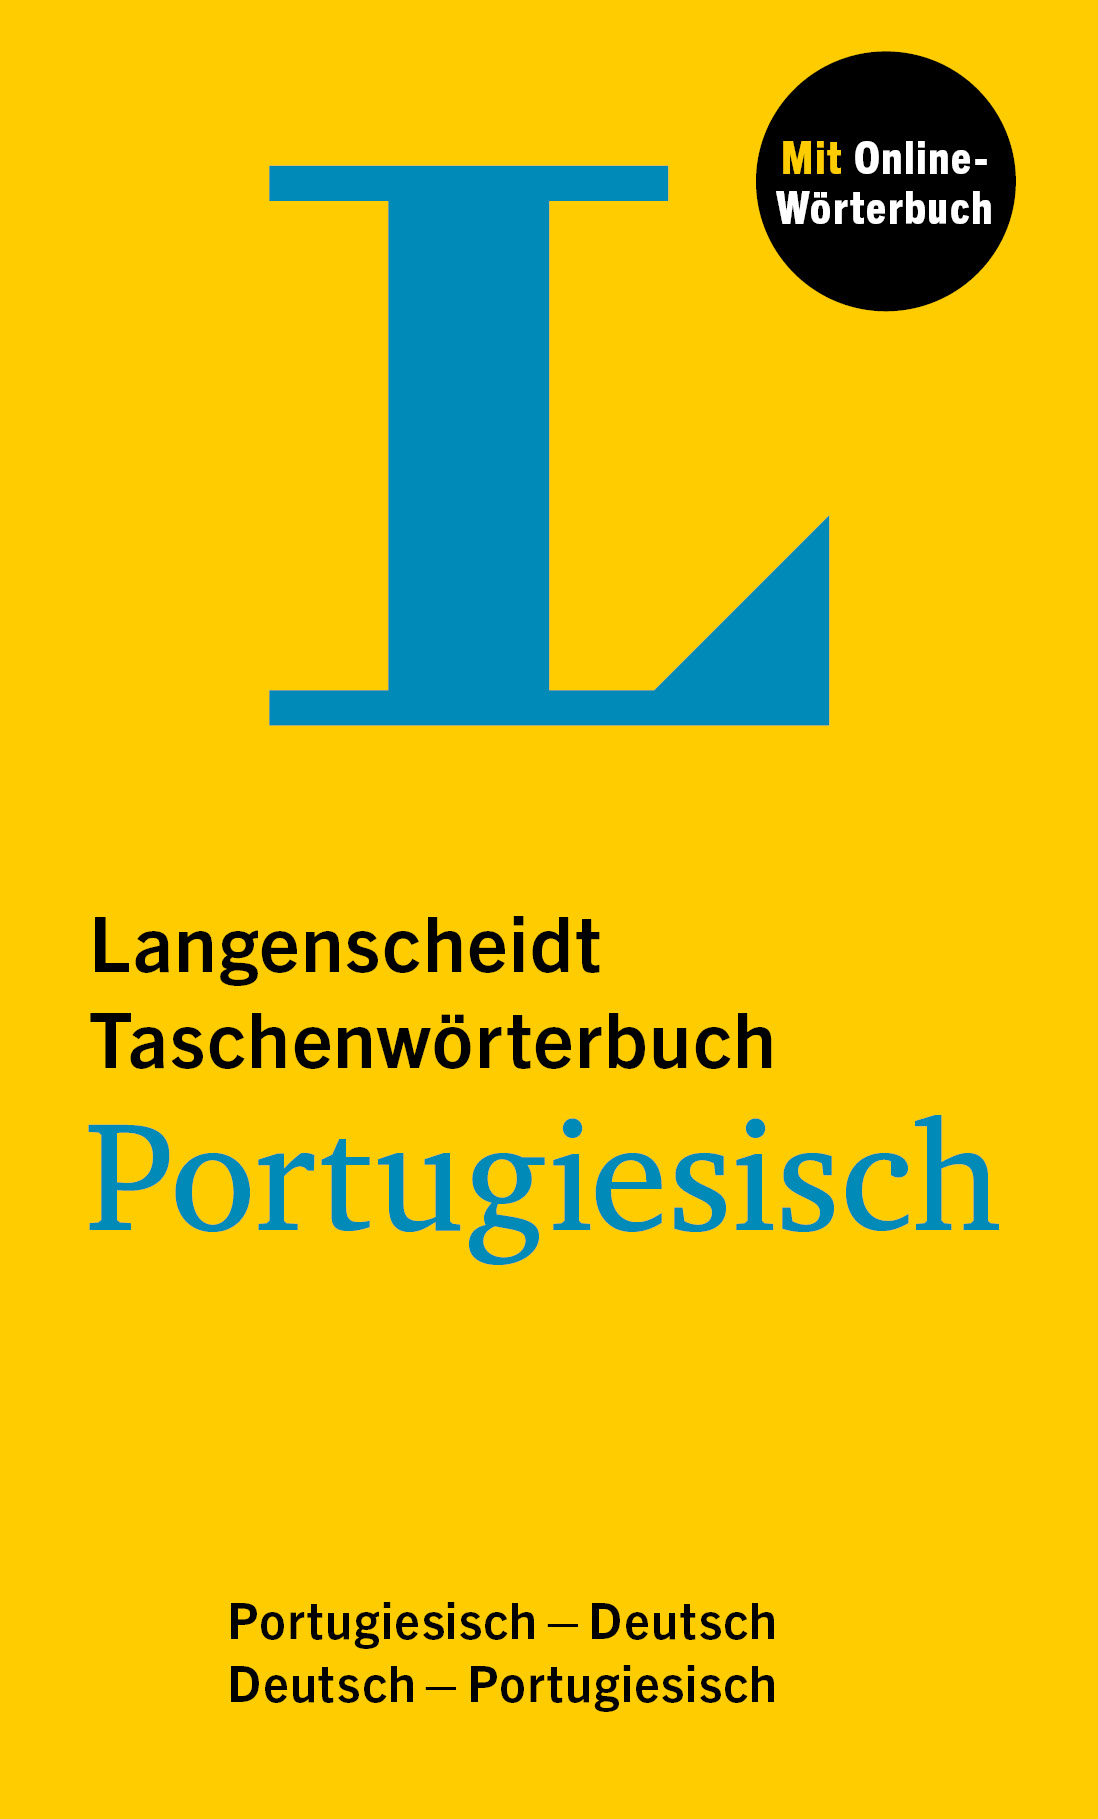 Langenscheidt Taschenwörterbuch Portugiesisch